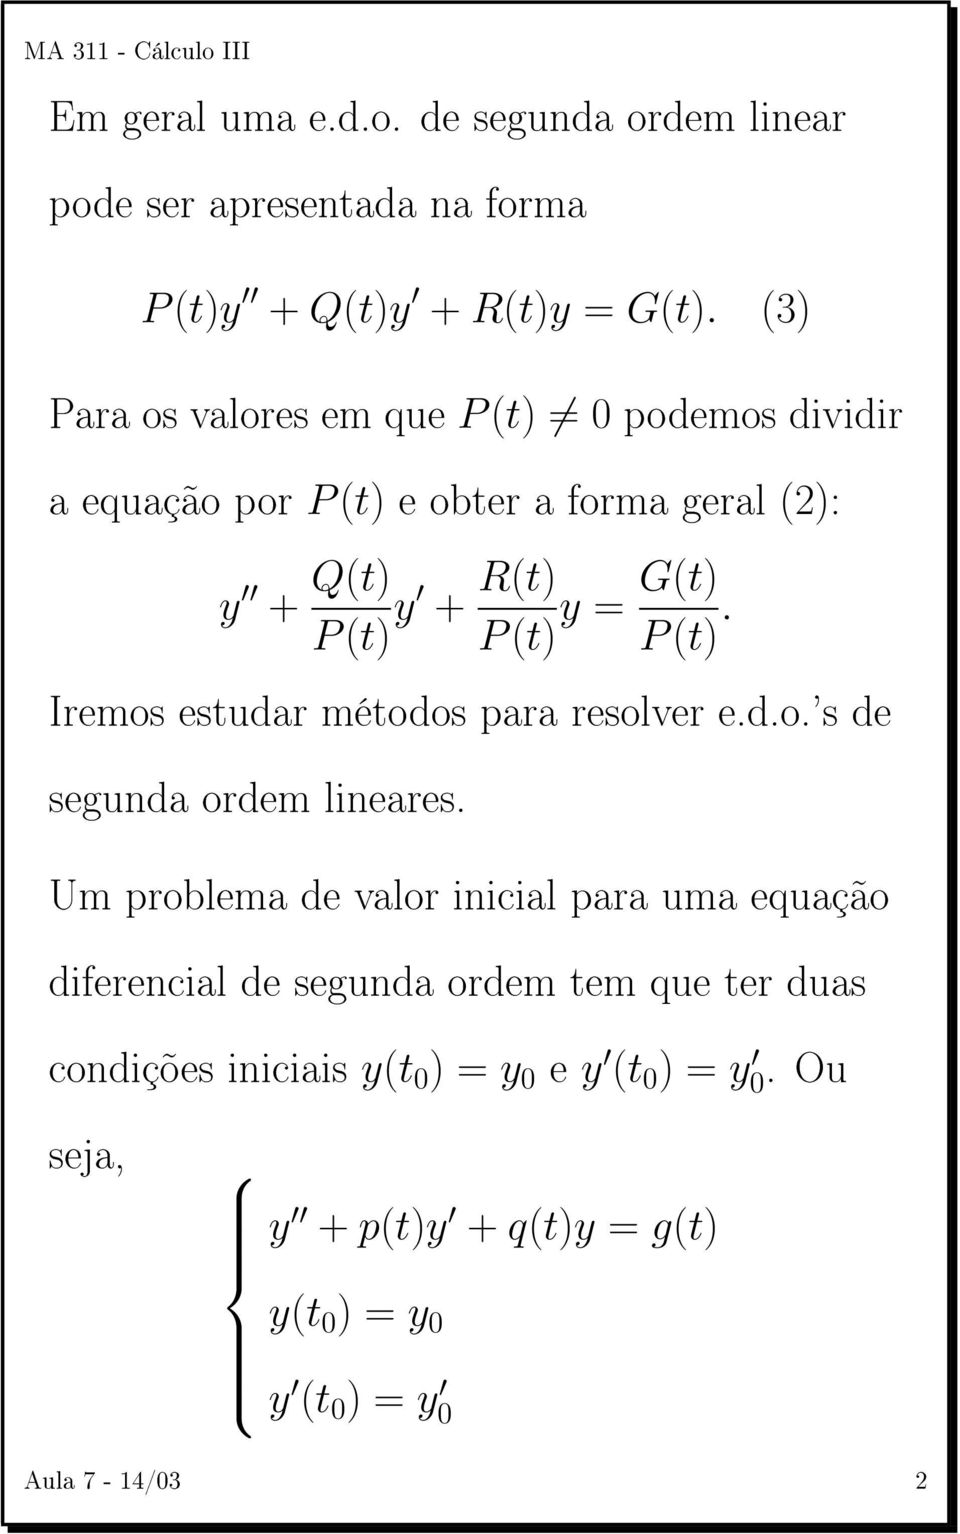 G(t) P (t). Iremos estudar métodos para resolver e.d.o.'s de segunda ordem lineares.